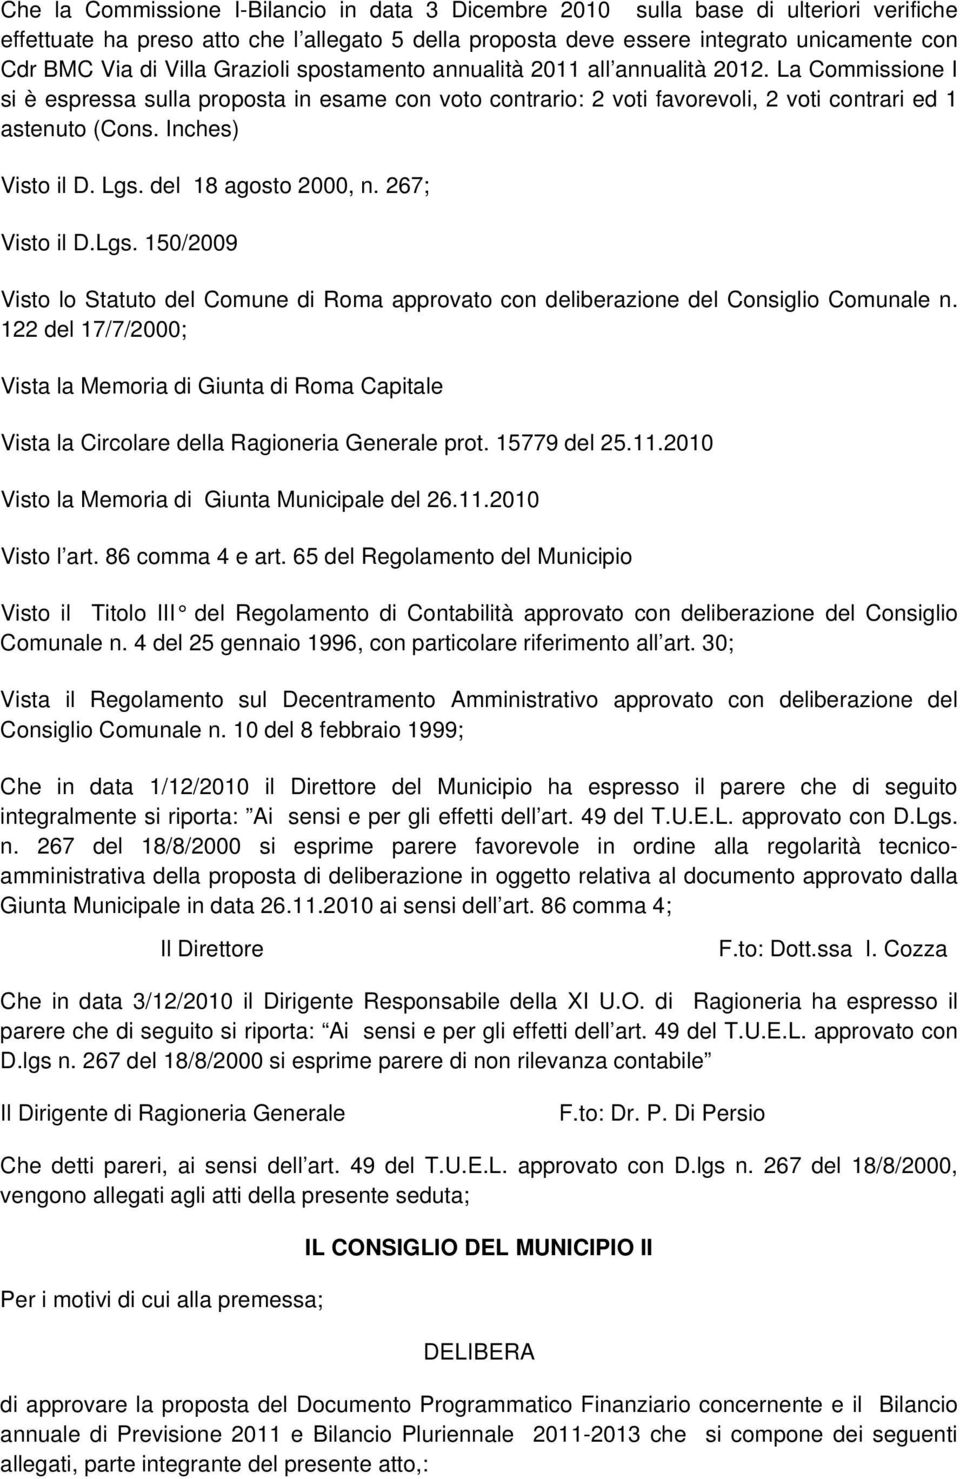 Inches) Visto il D. Lgs. del 18 agosto 2000, n. 267; Visto il D.Lgs. 150/2009 Visto lo Statuto del Comune di Roma approvato con deliberazione del Consiglio Comunale n.